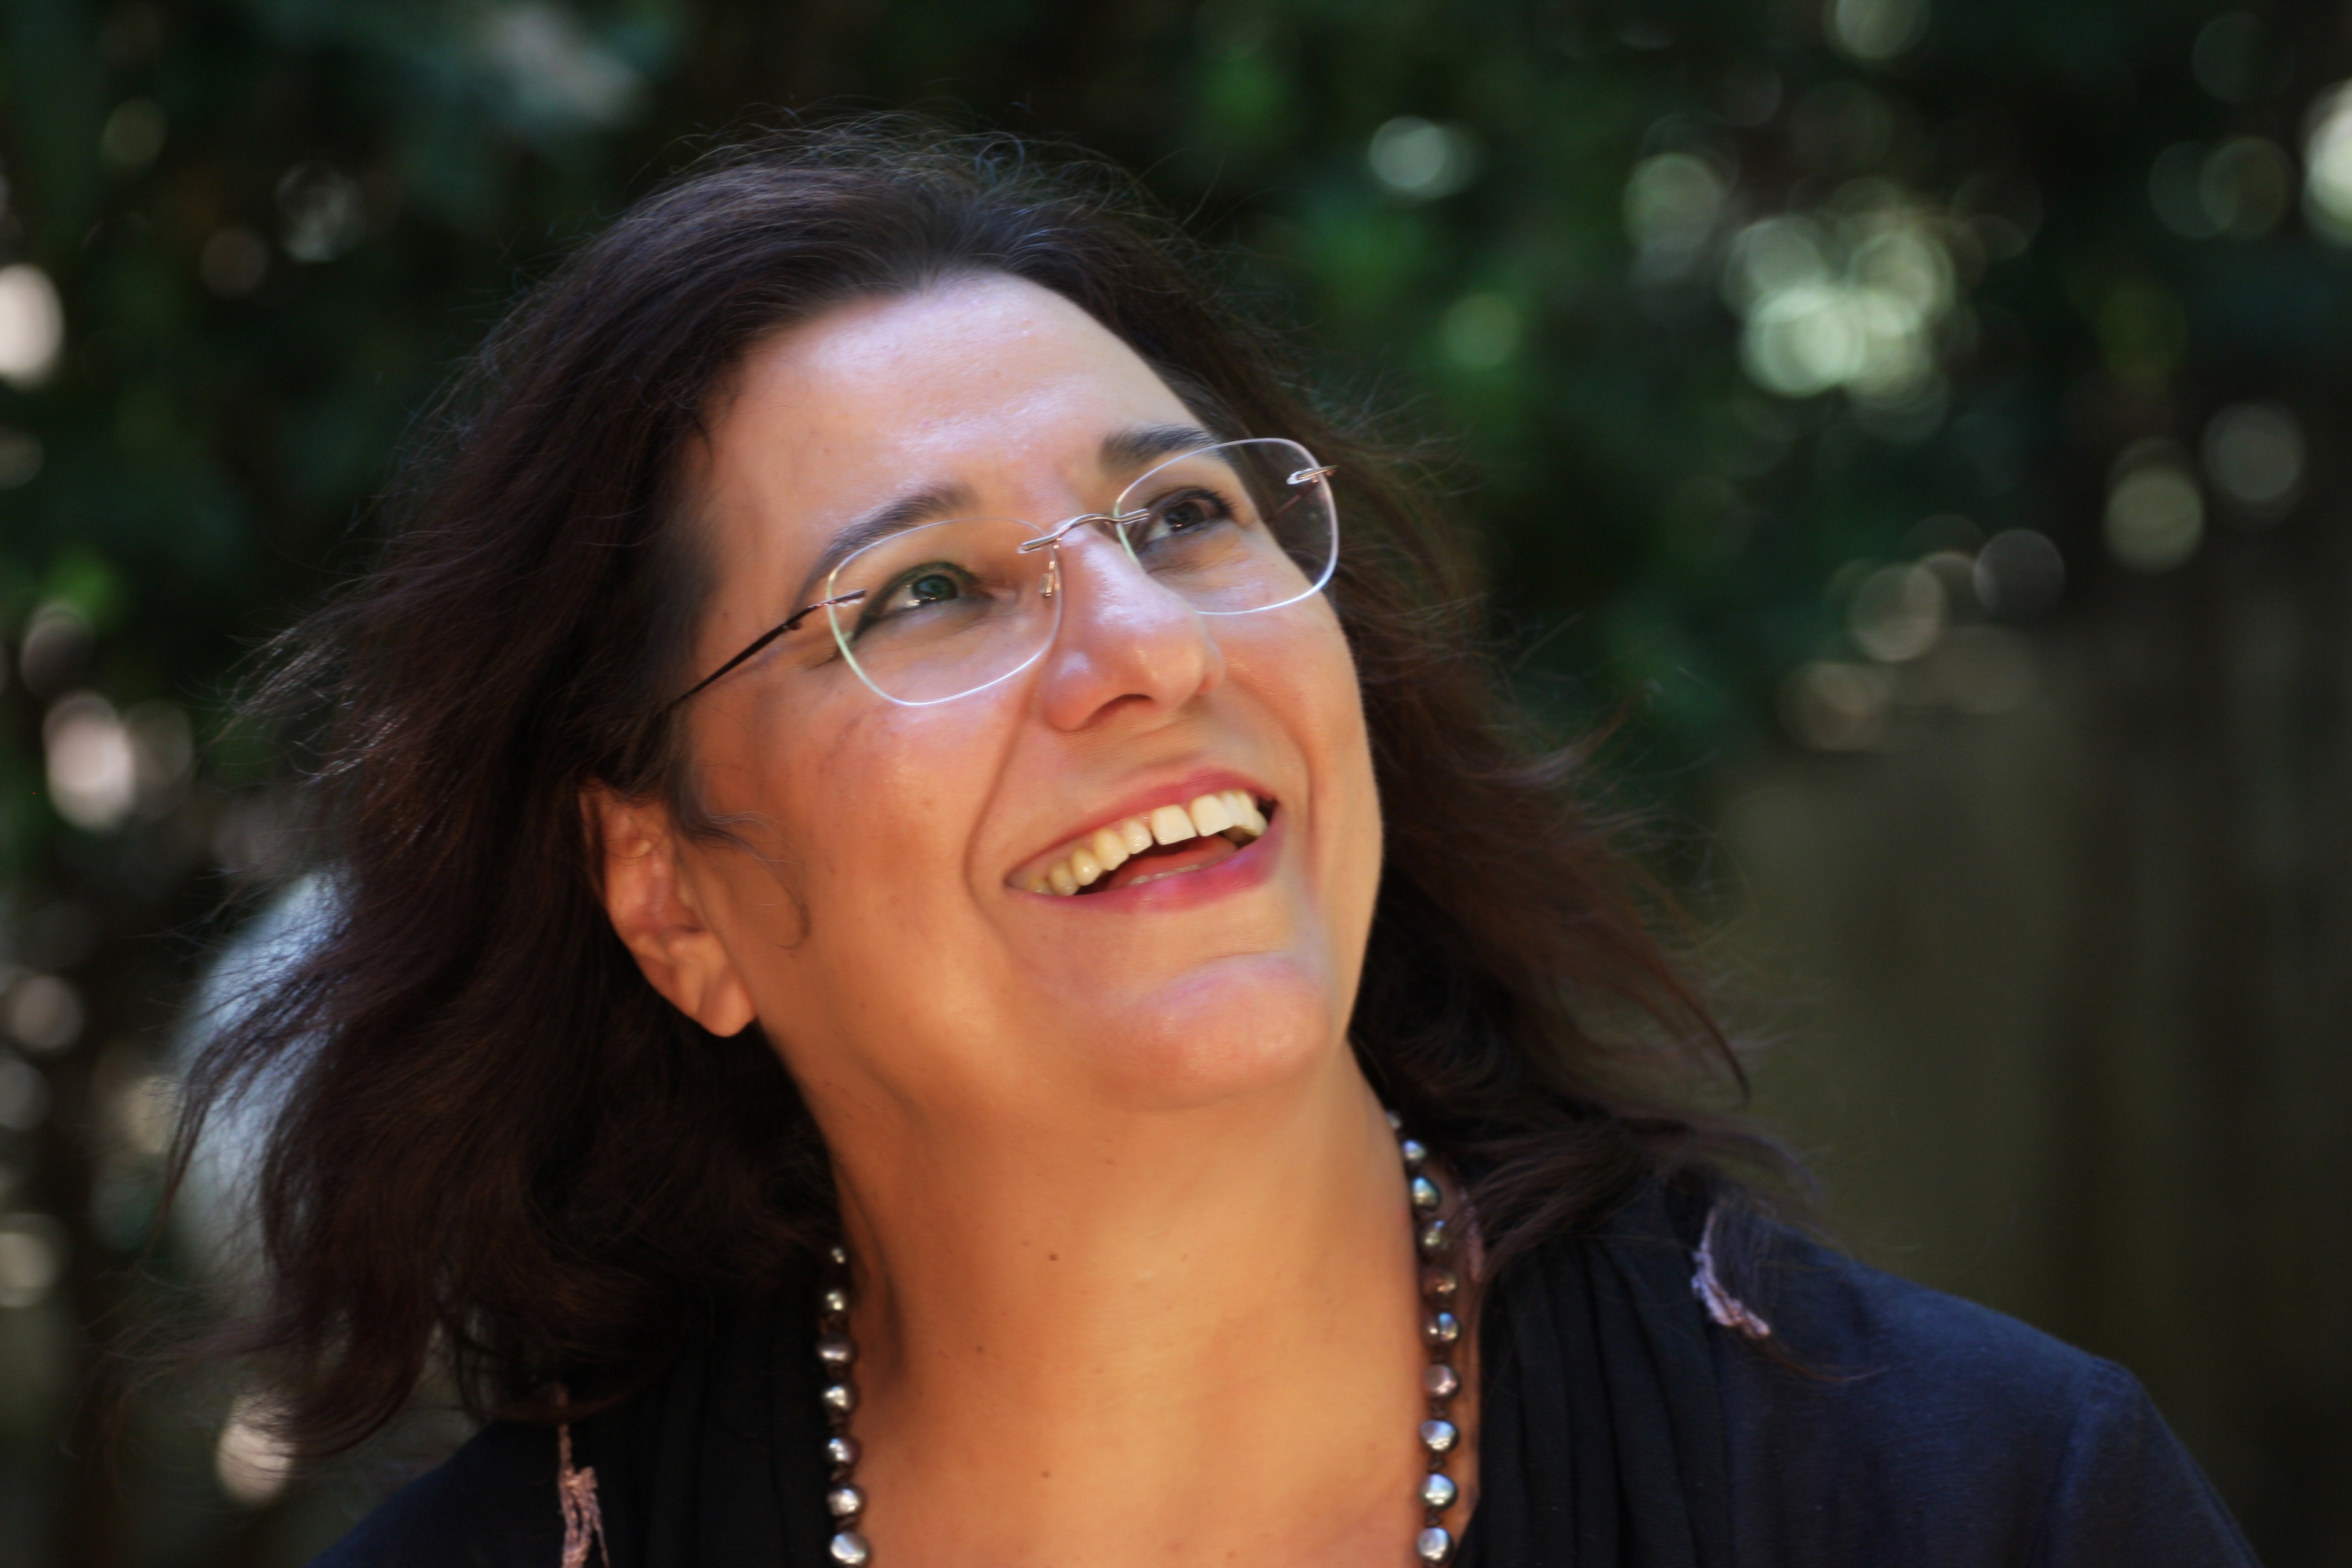 Διεθνές βραβείο στη Μαρία Φαραντούρη για την «απαράμιλλη φωνή και ερμηνεία της»